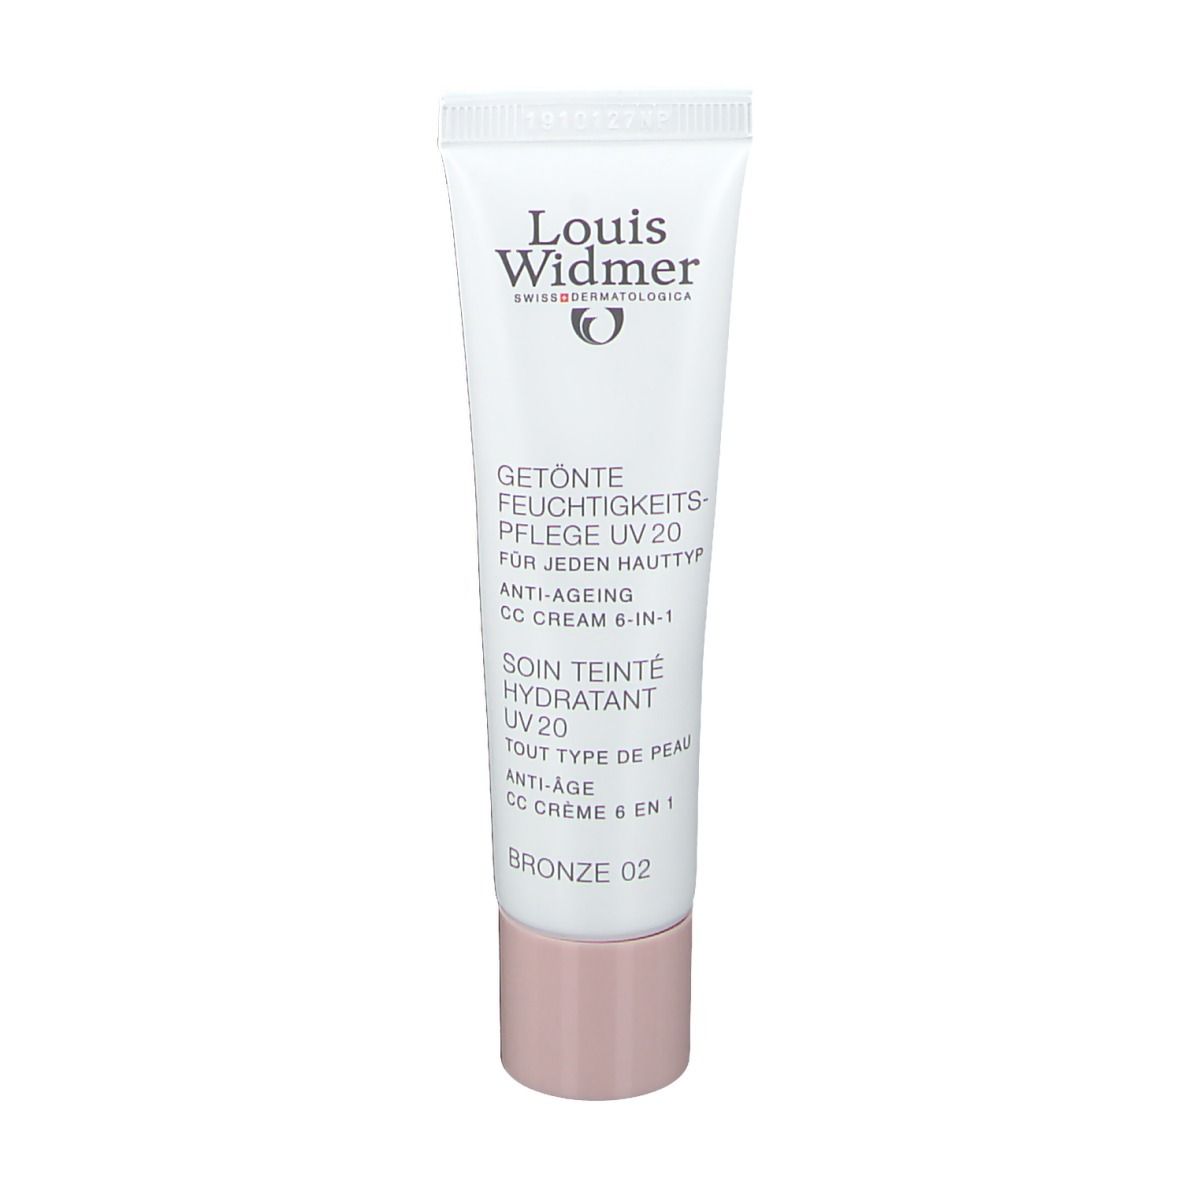 Louis Widmer Getönte Feuchtigkeitspflege UV 20 CC Cream Bronze unparfümiert